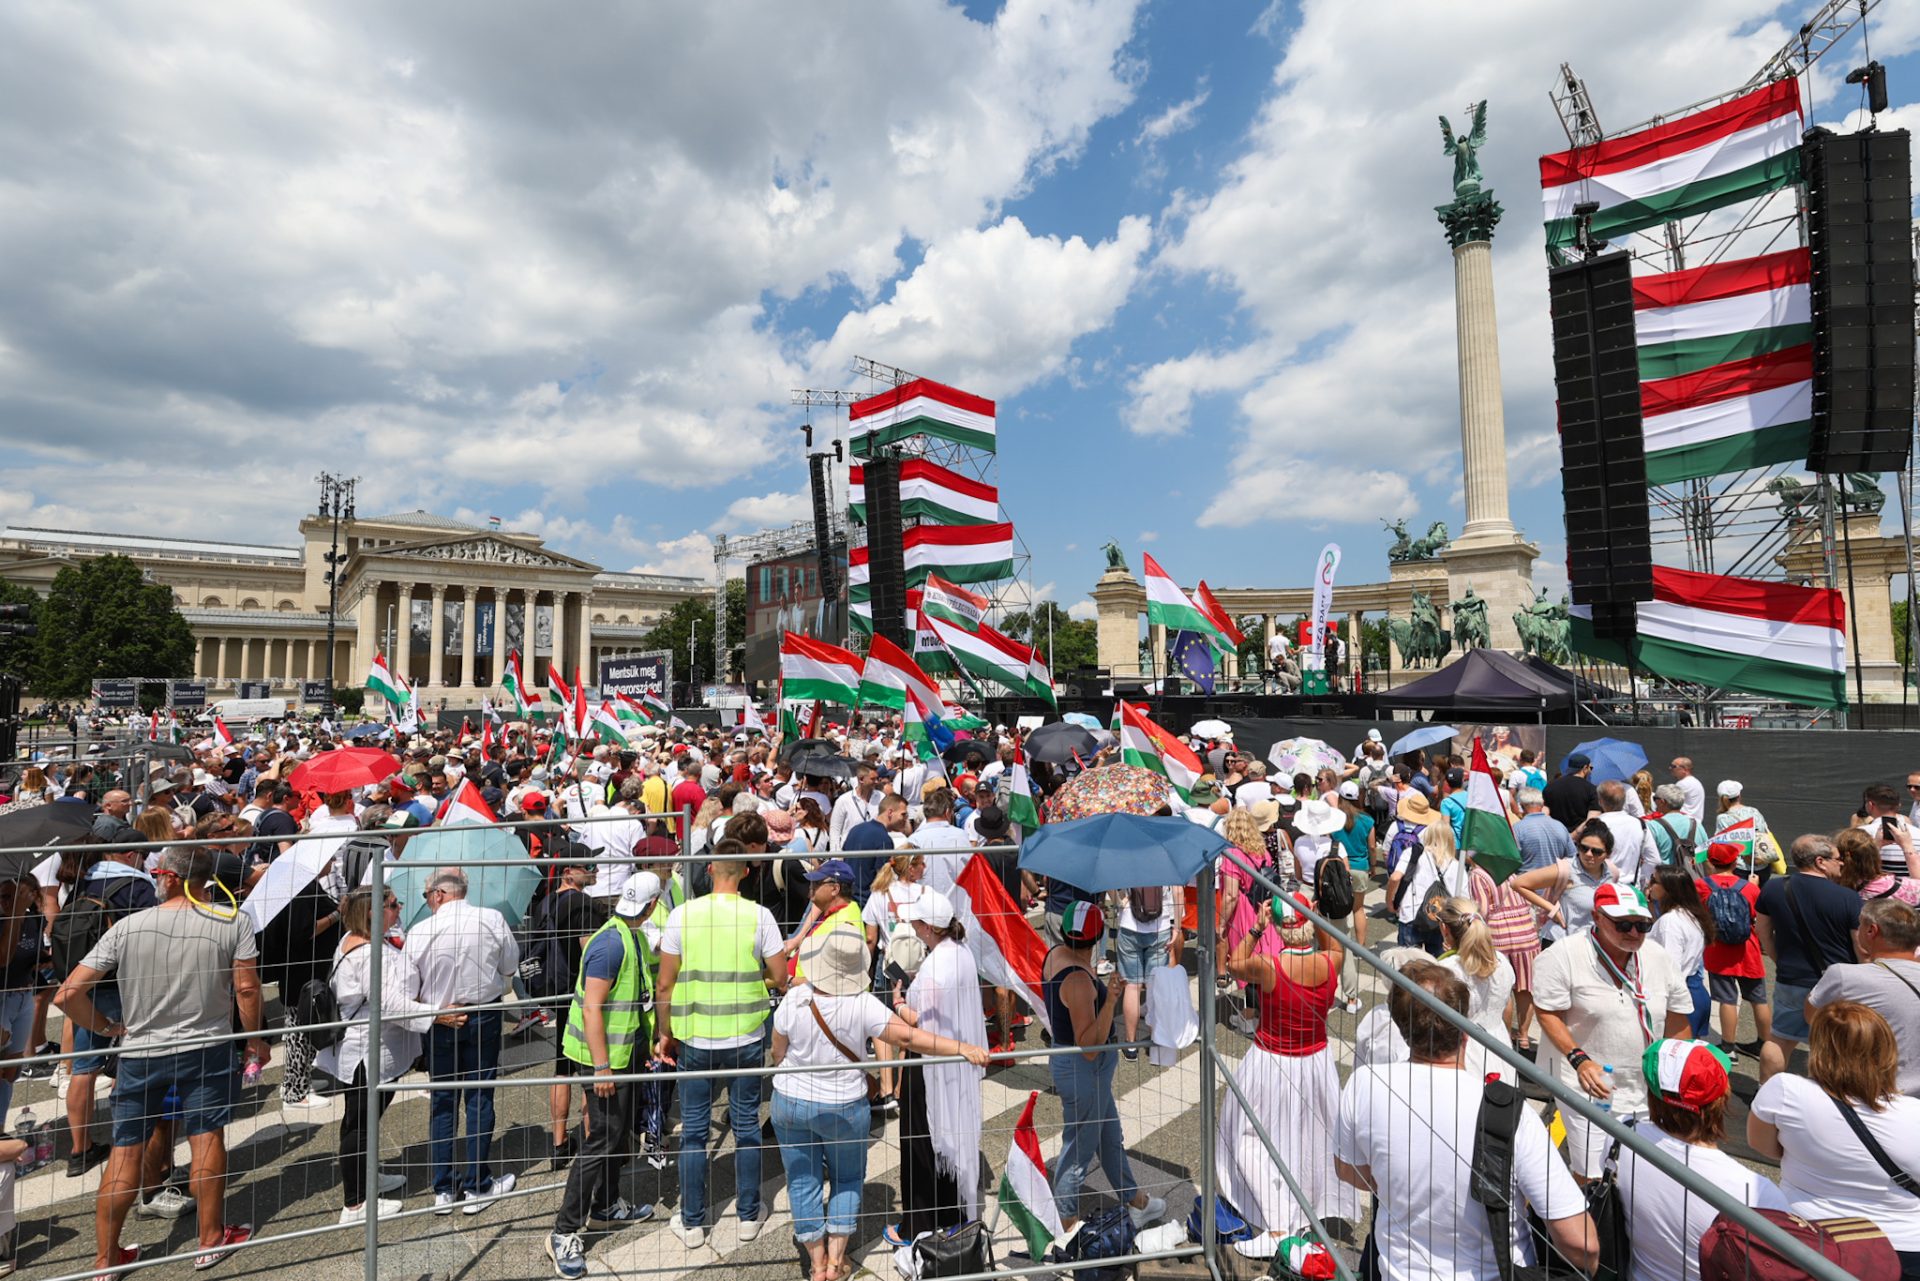 Embertömeg a Hősök terén: Magyar Péter tüntetését várva